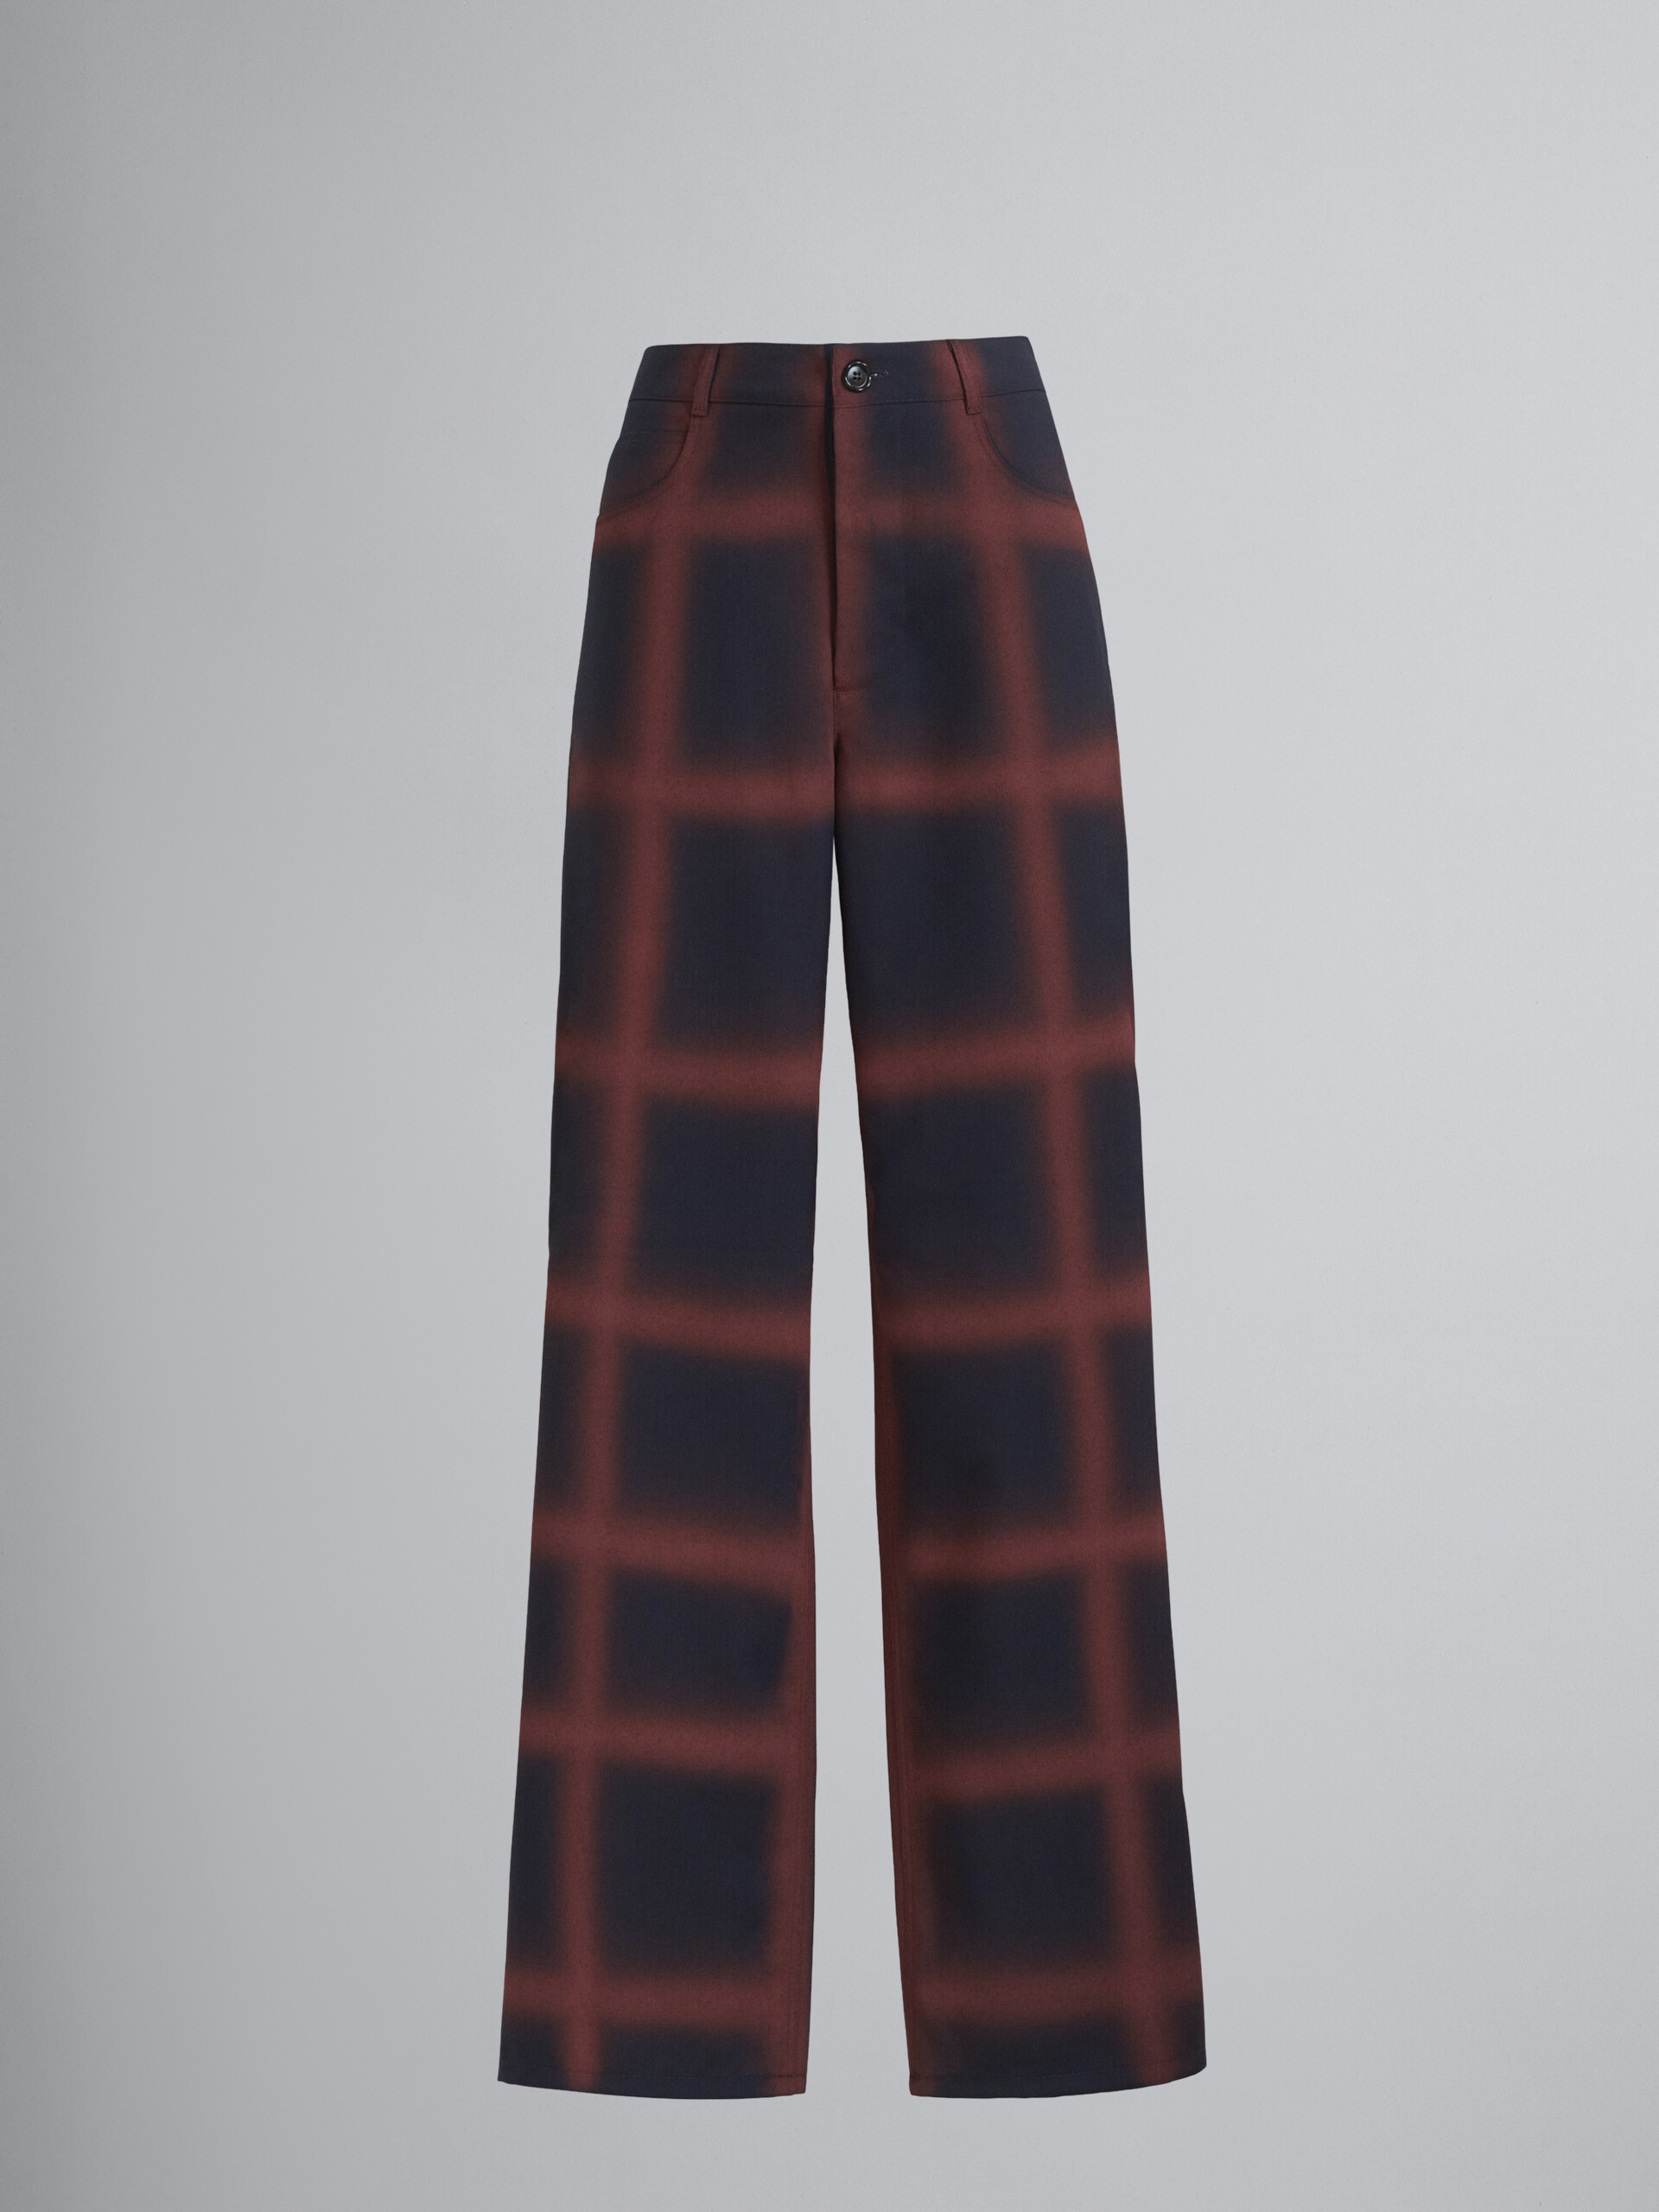 Pantaloni in lana vergine con disegno a riquadri spruzzato a mano - Pantaloni - Image 1